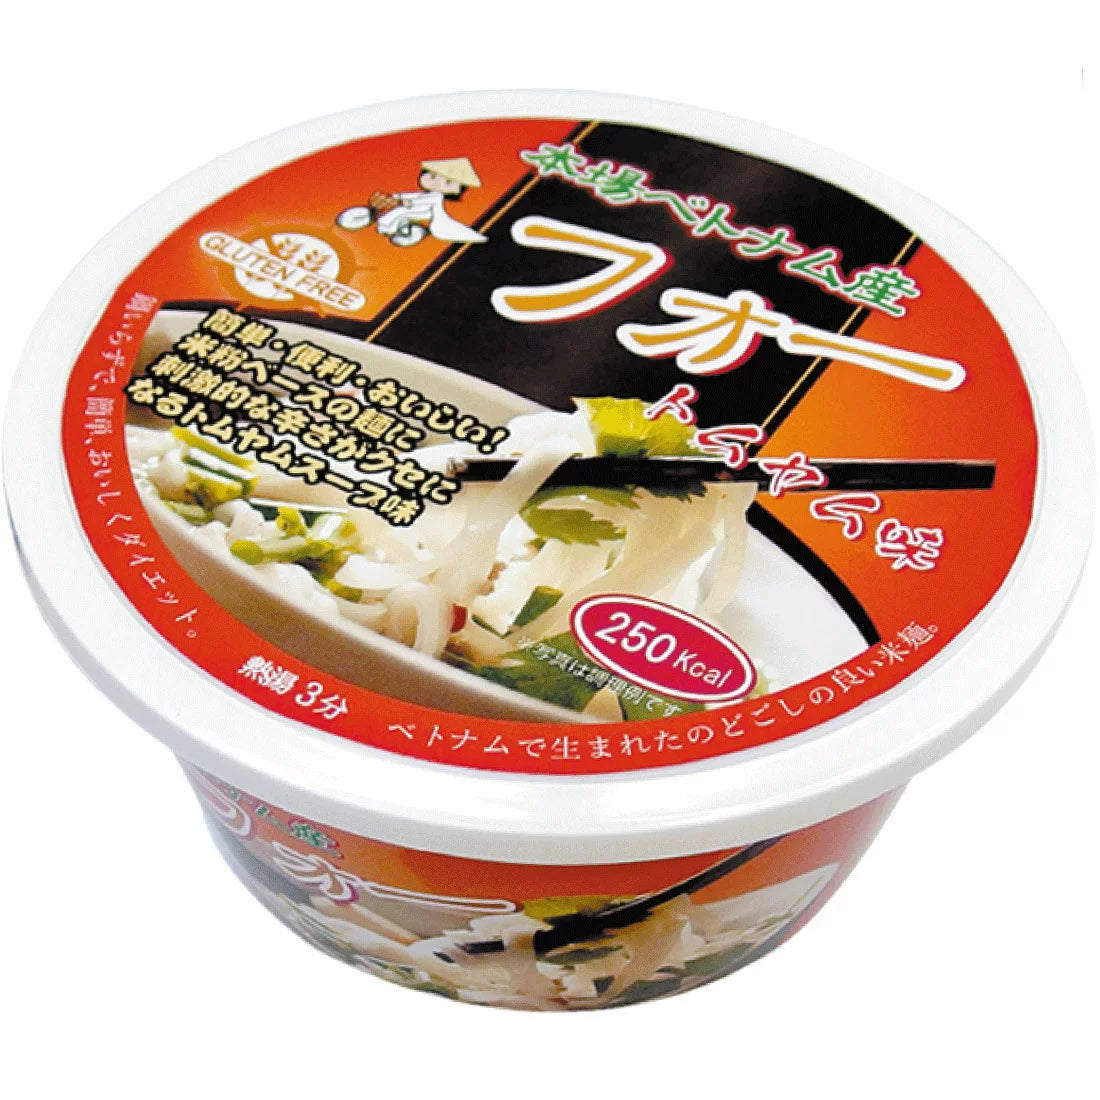 フォー トムヤム味 カップ麺 65g